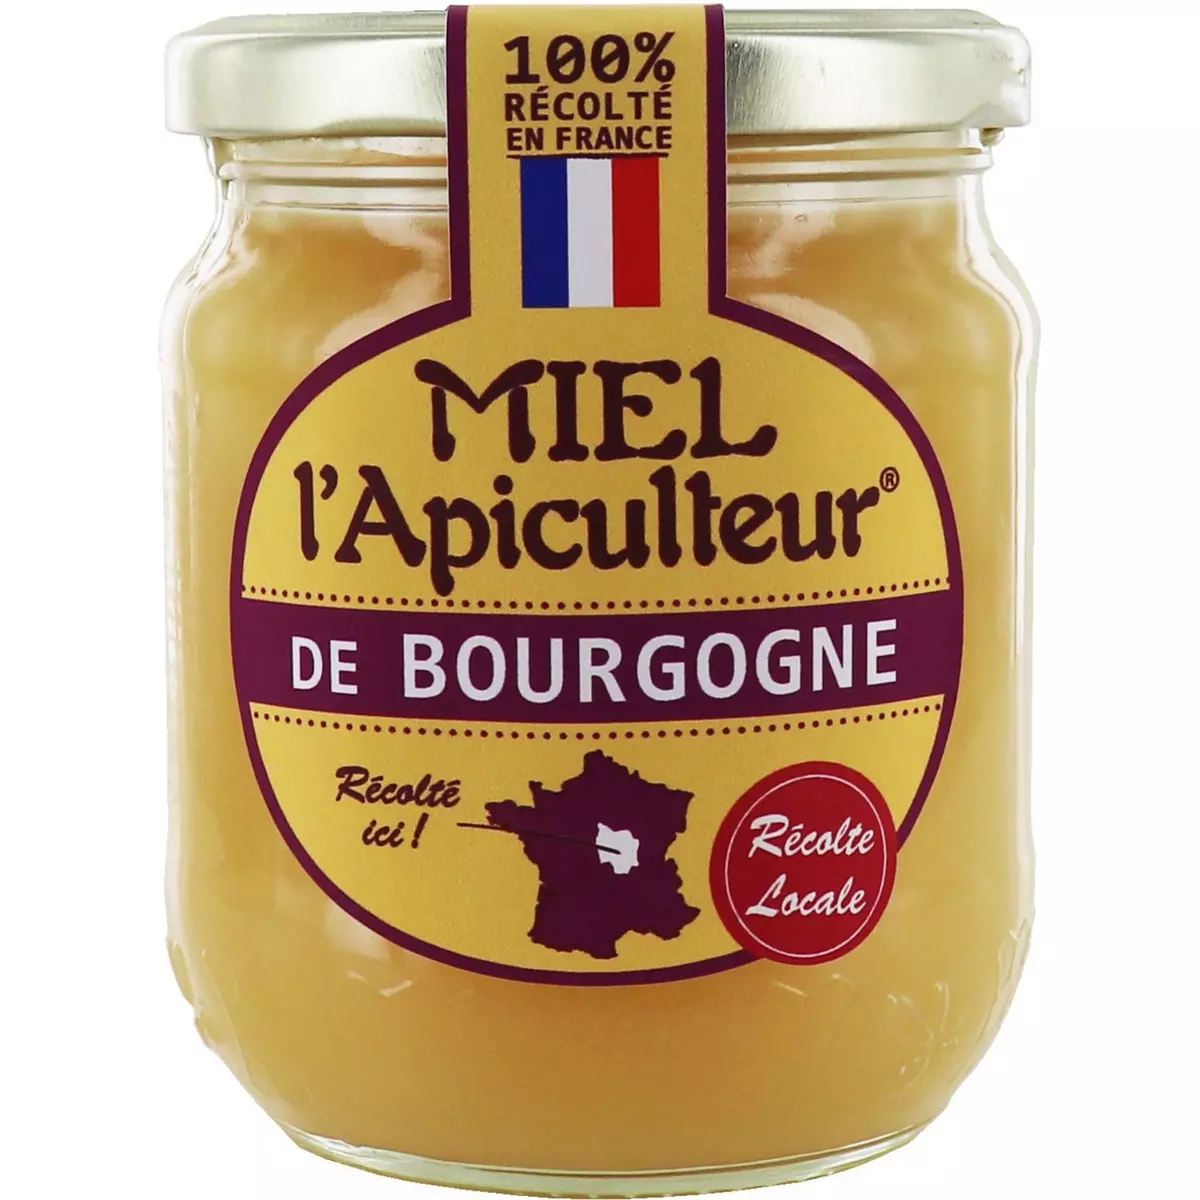 L'APICULTEUR Miel de Bourgogne bocal 375g